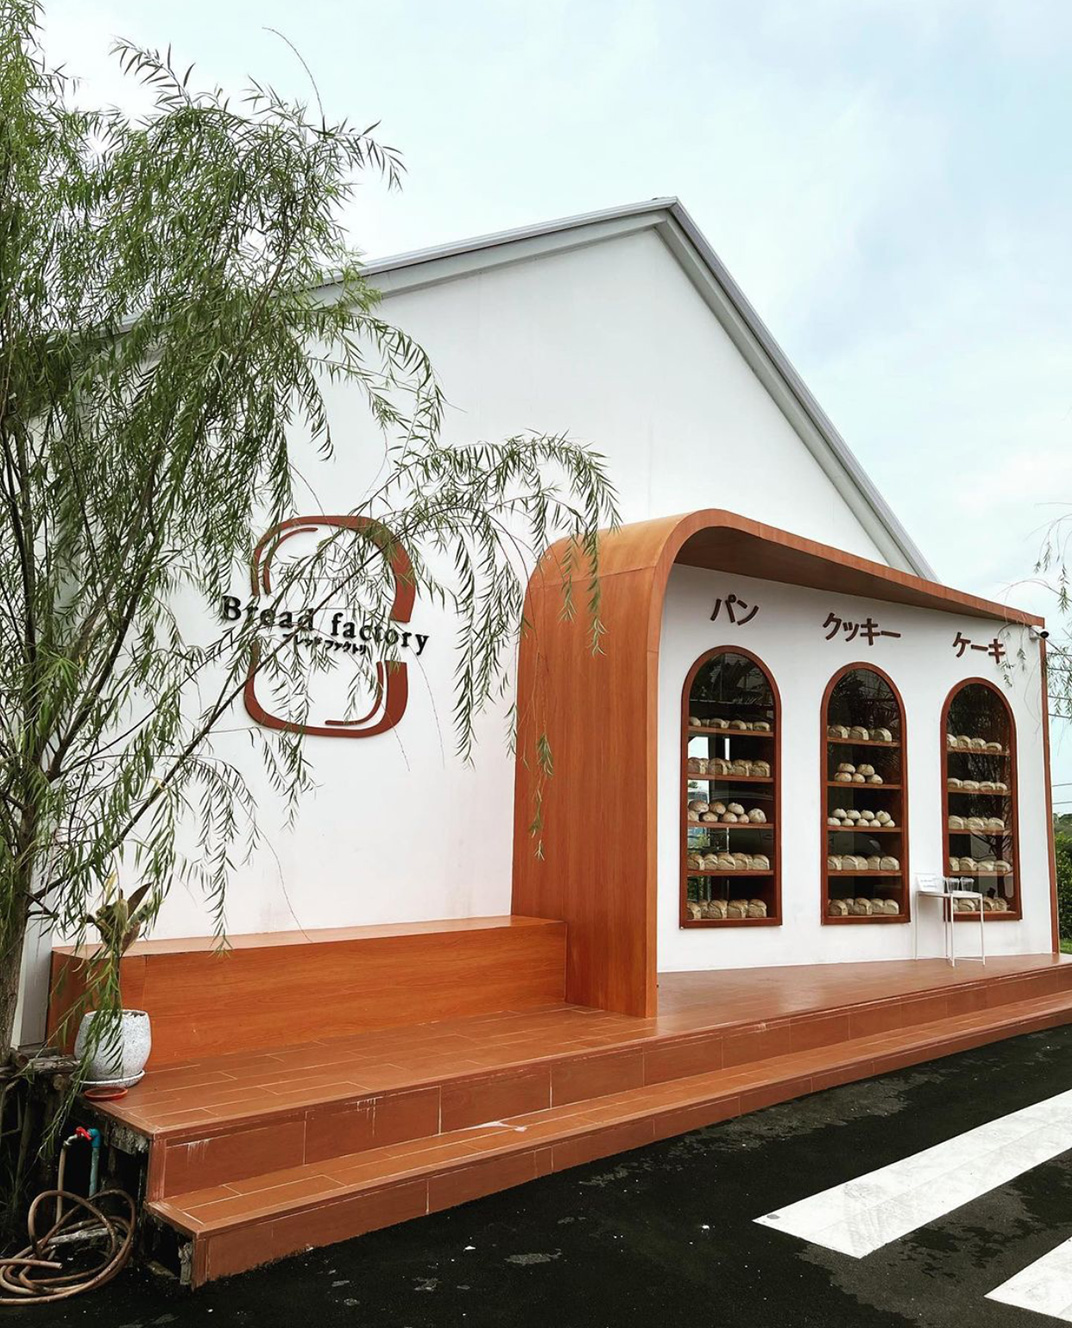 面包店Bread Factory 越南 河内 面包店 木色 logo设计 vi设计 空间设计